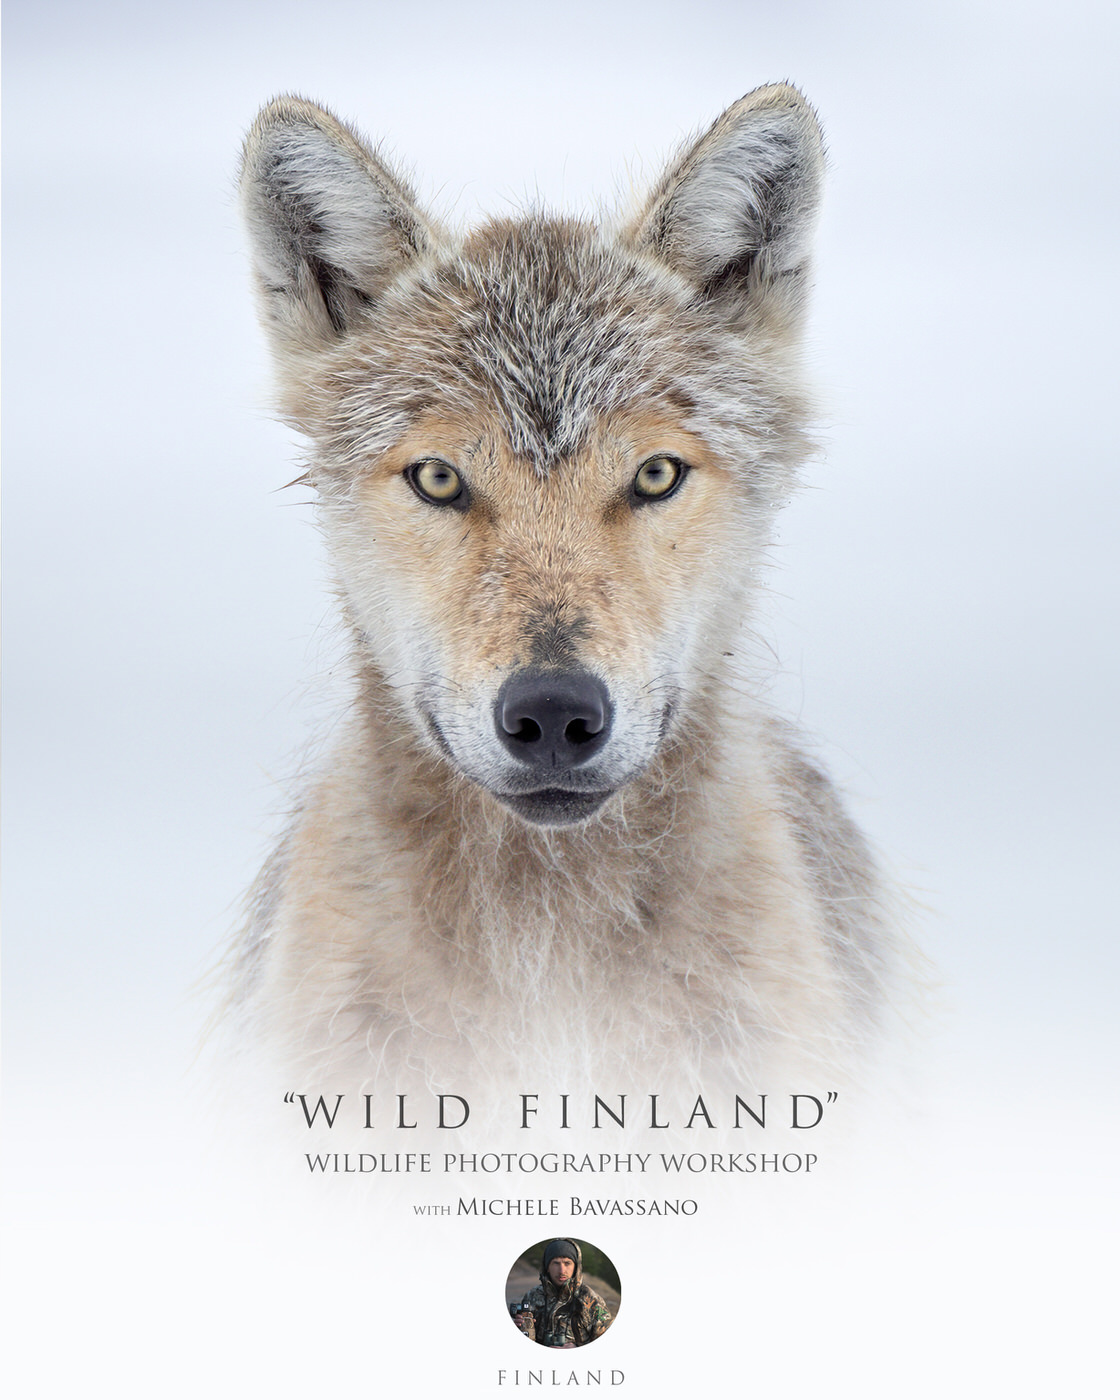 Wild Finland - wildlife photography workshop